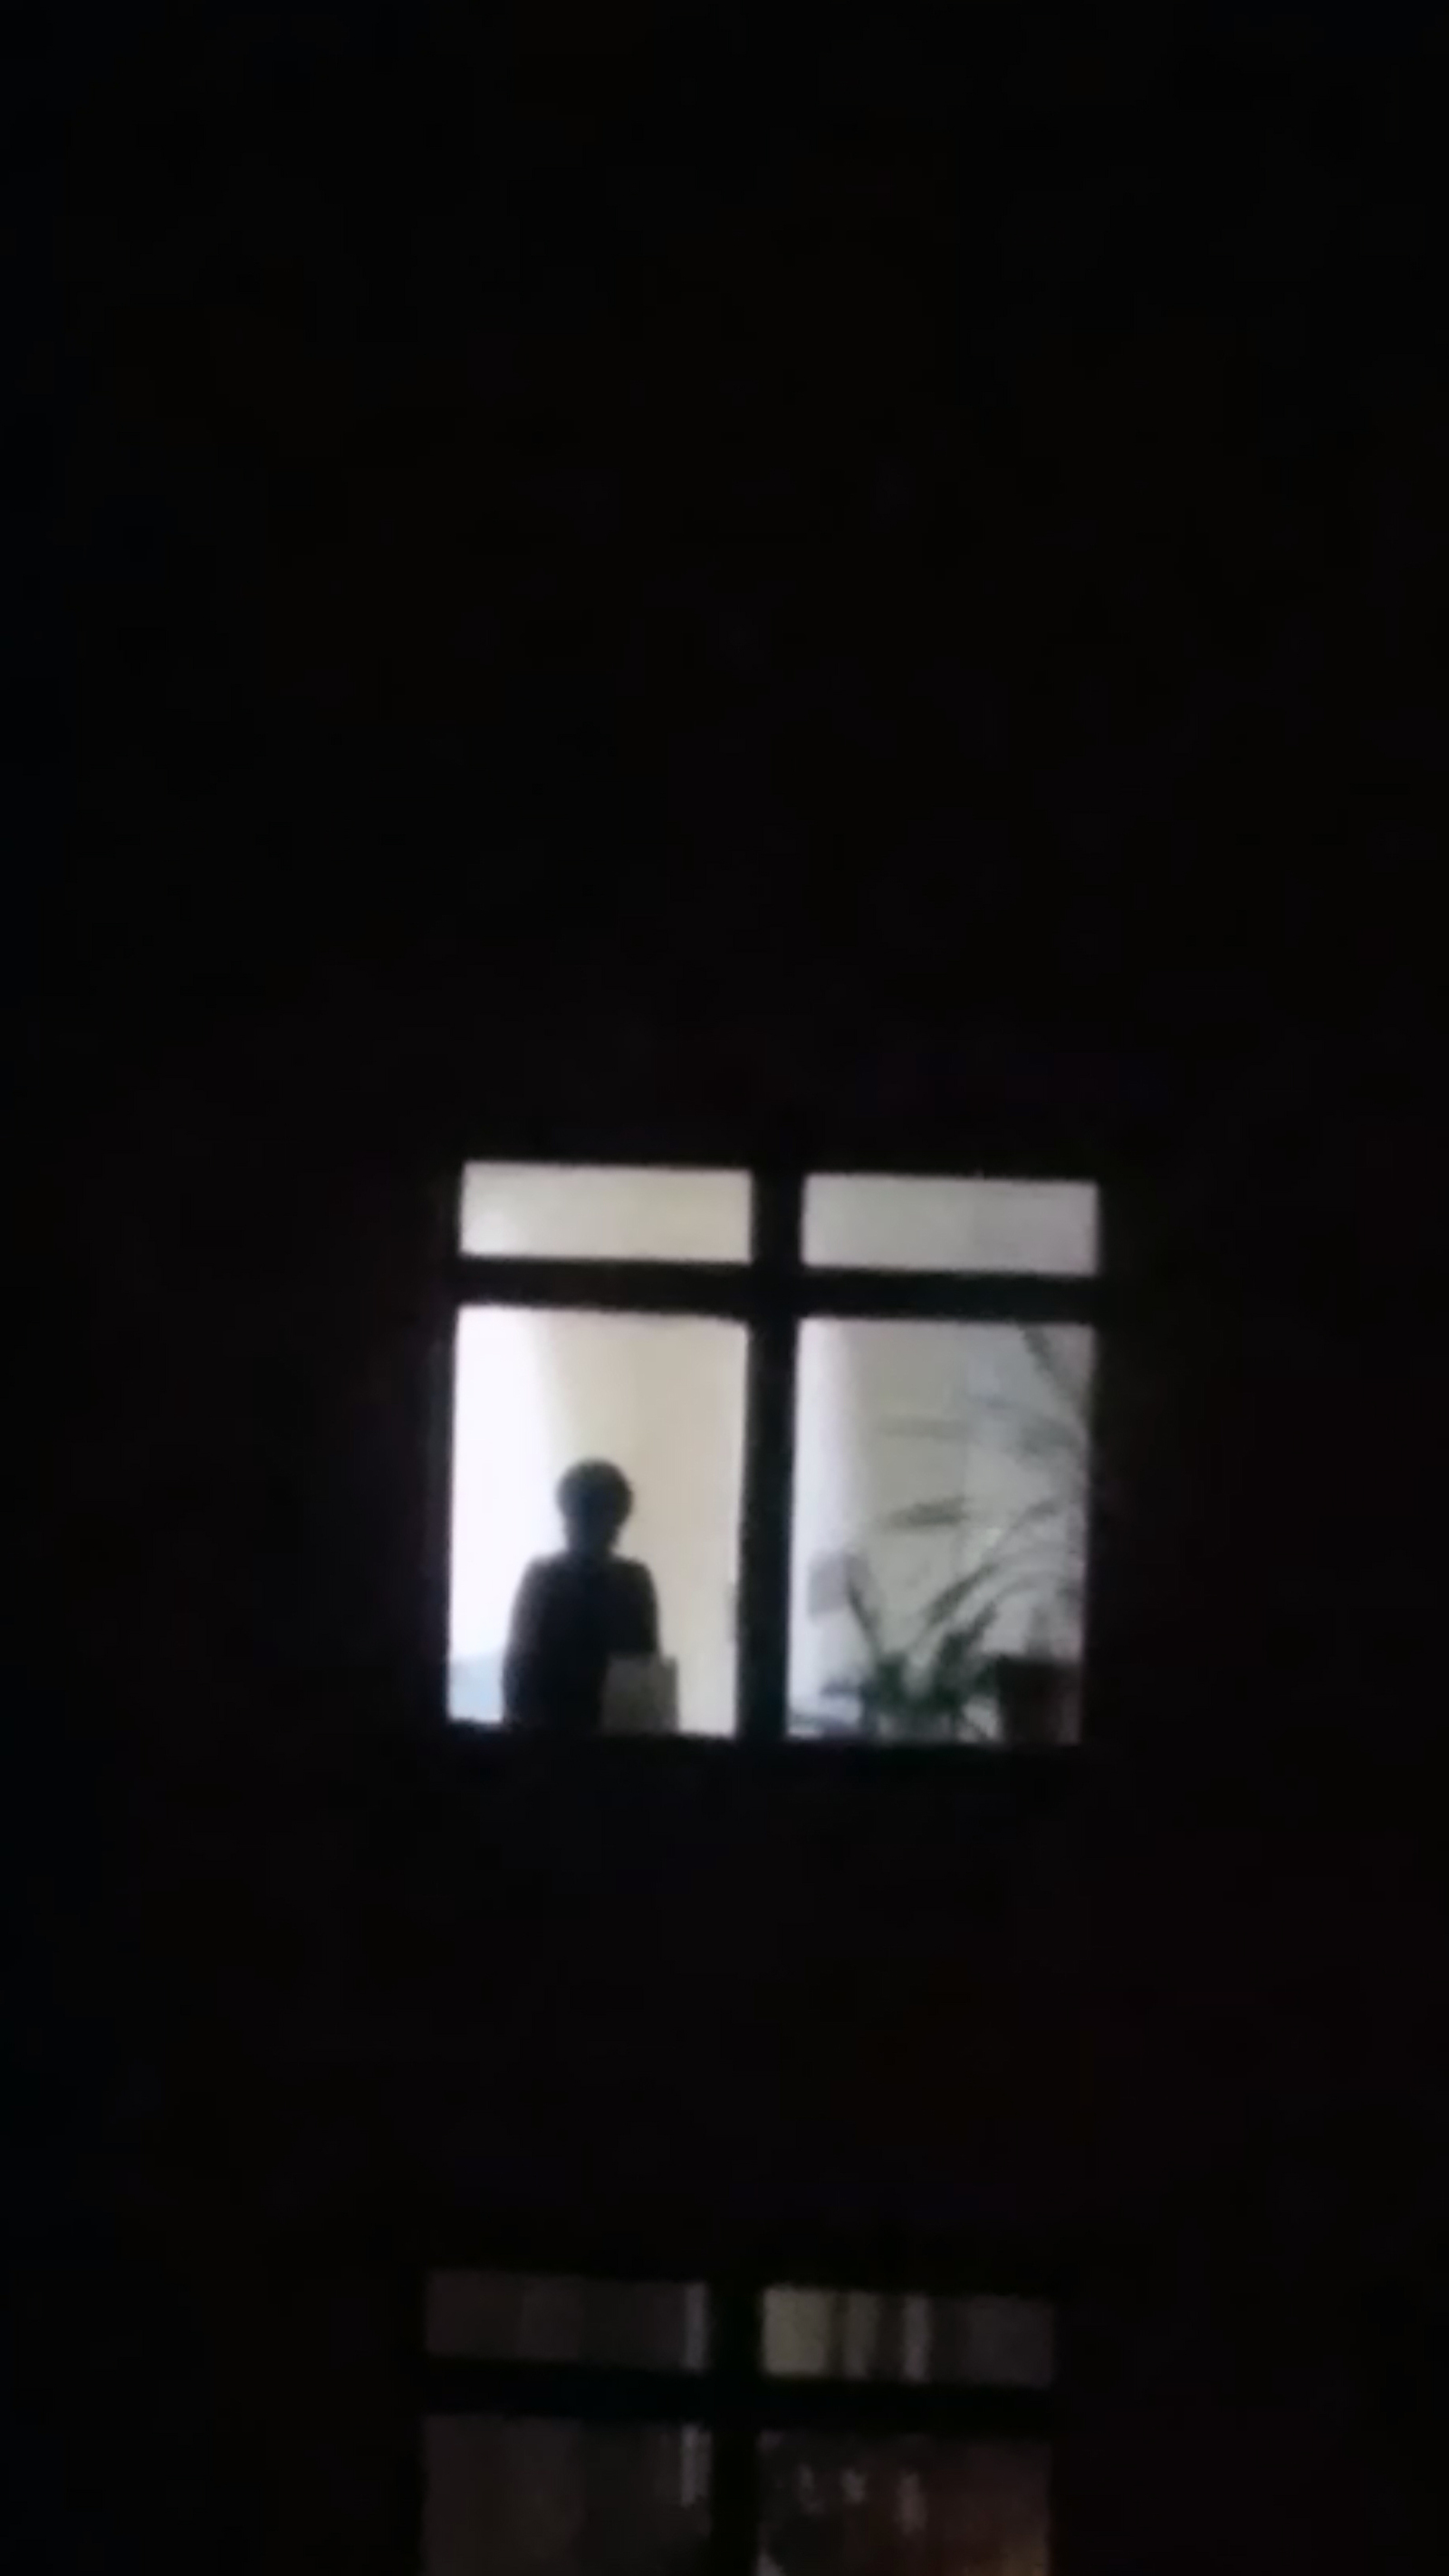 Нечто в окне напротив | Пикабу